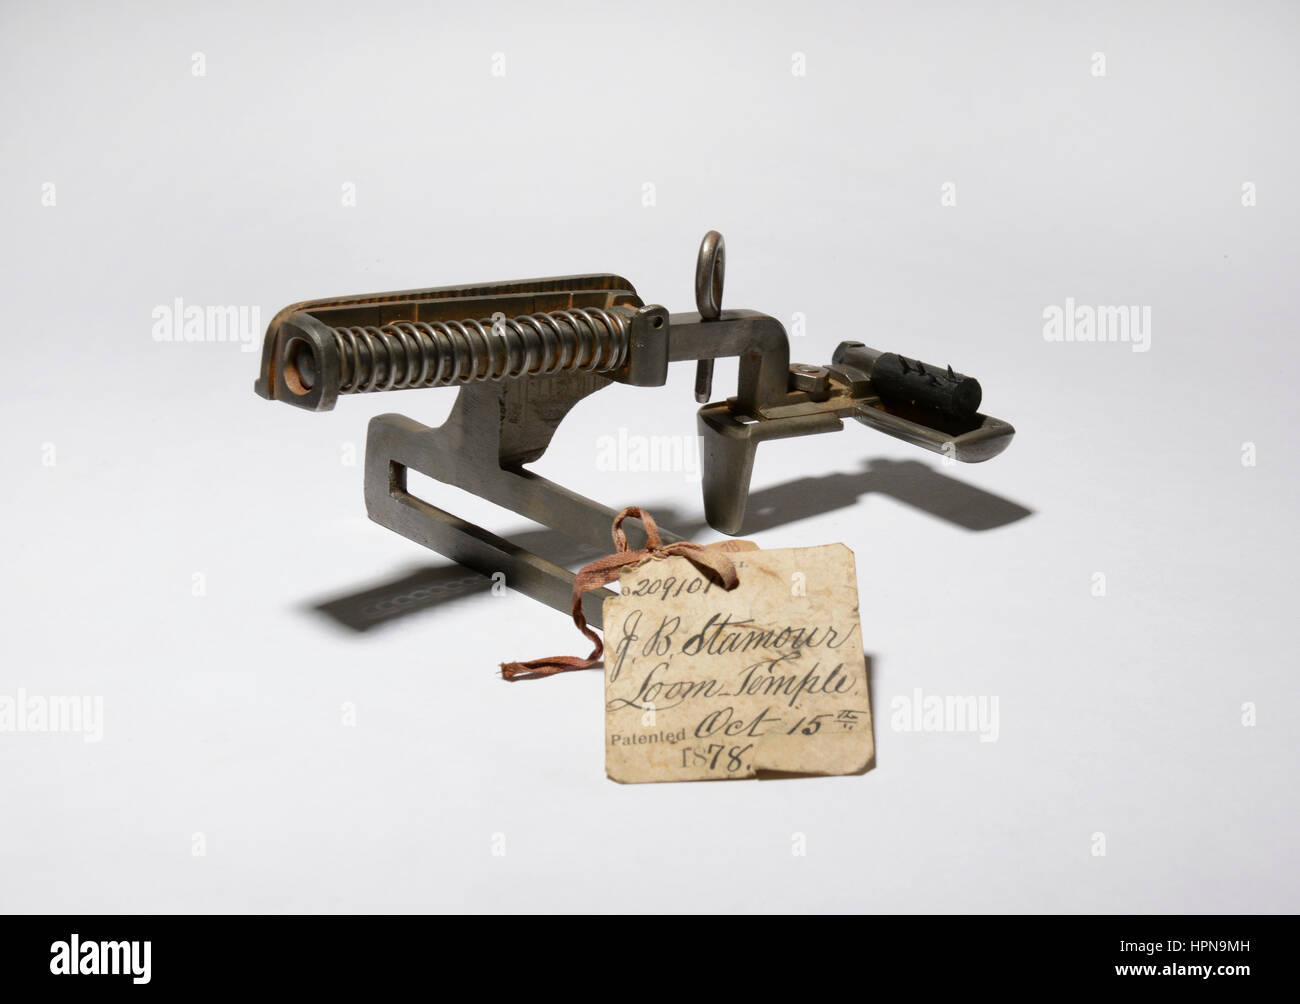 Patent-Modell einer verbesserten Webstuhl-Tempel-Maschine erfunden von J. B. Stamour, US Patent Nummer 209101 am 15. Oktober 1878 gewährt. Stockfoto